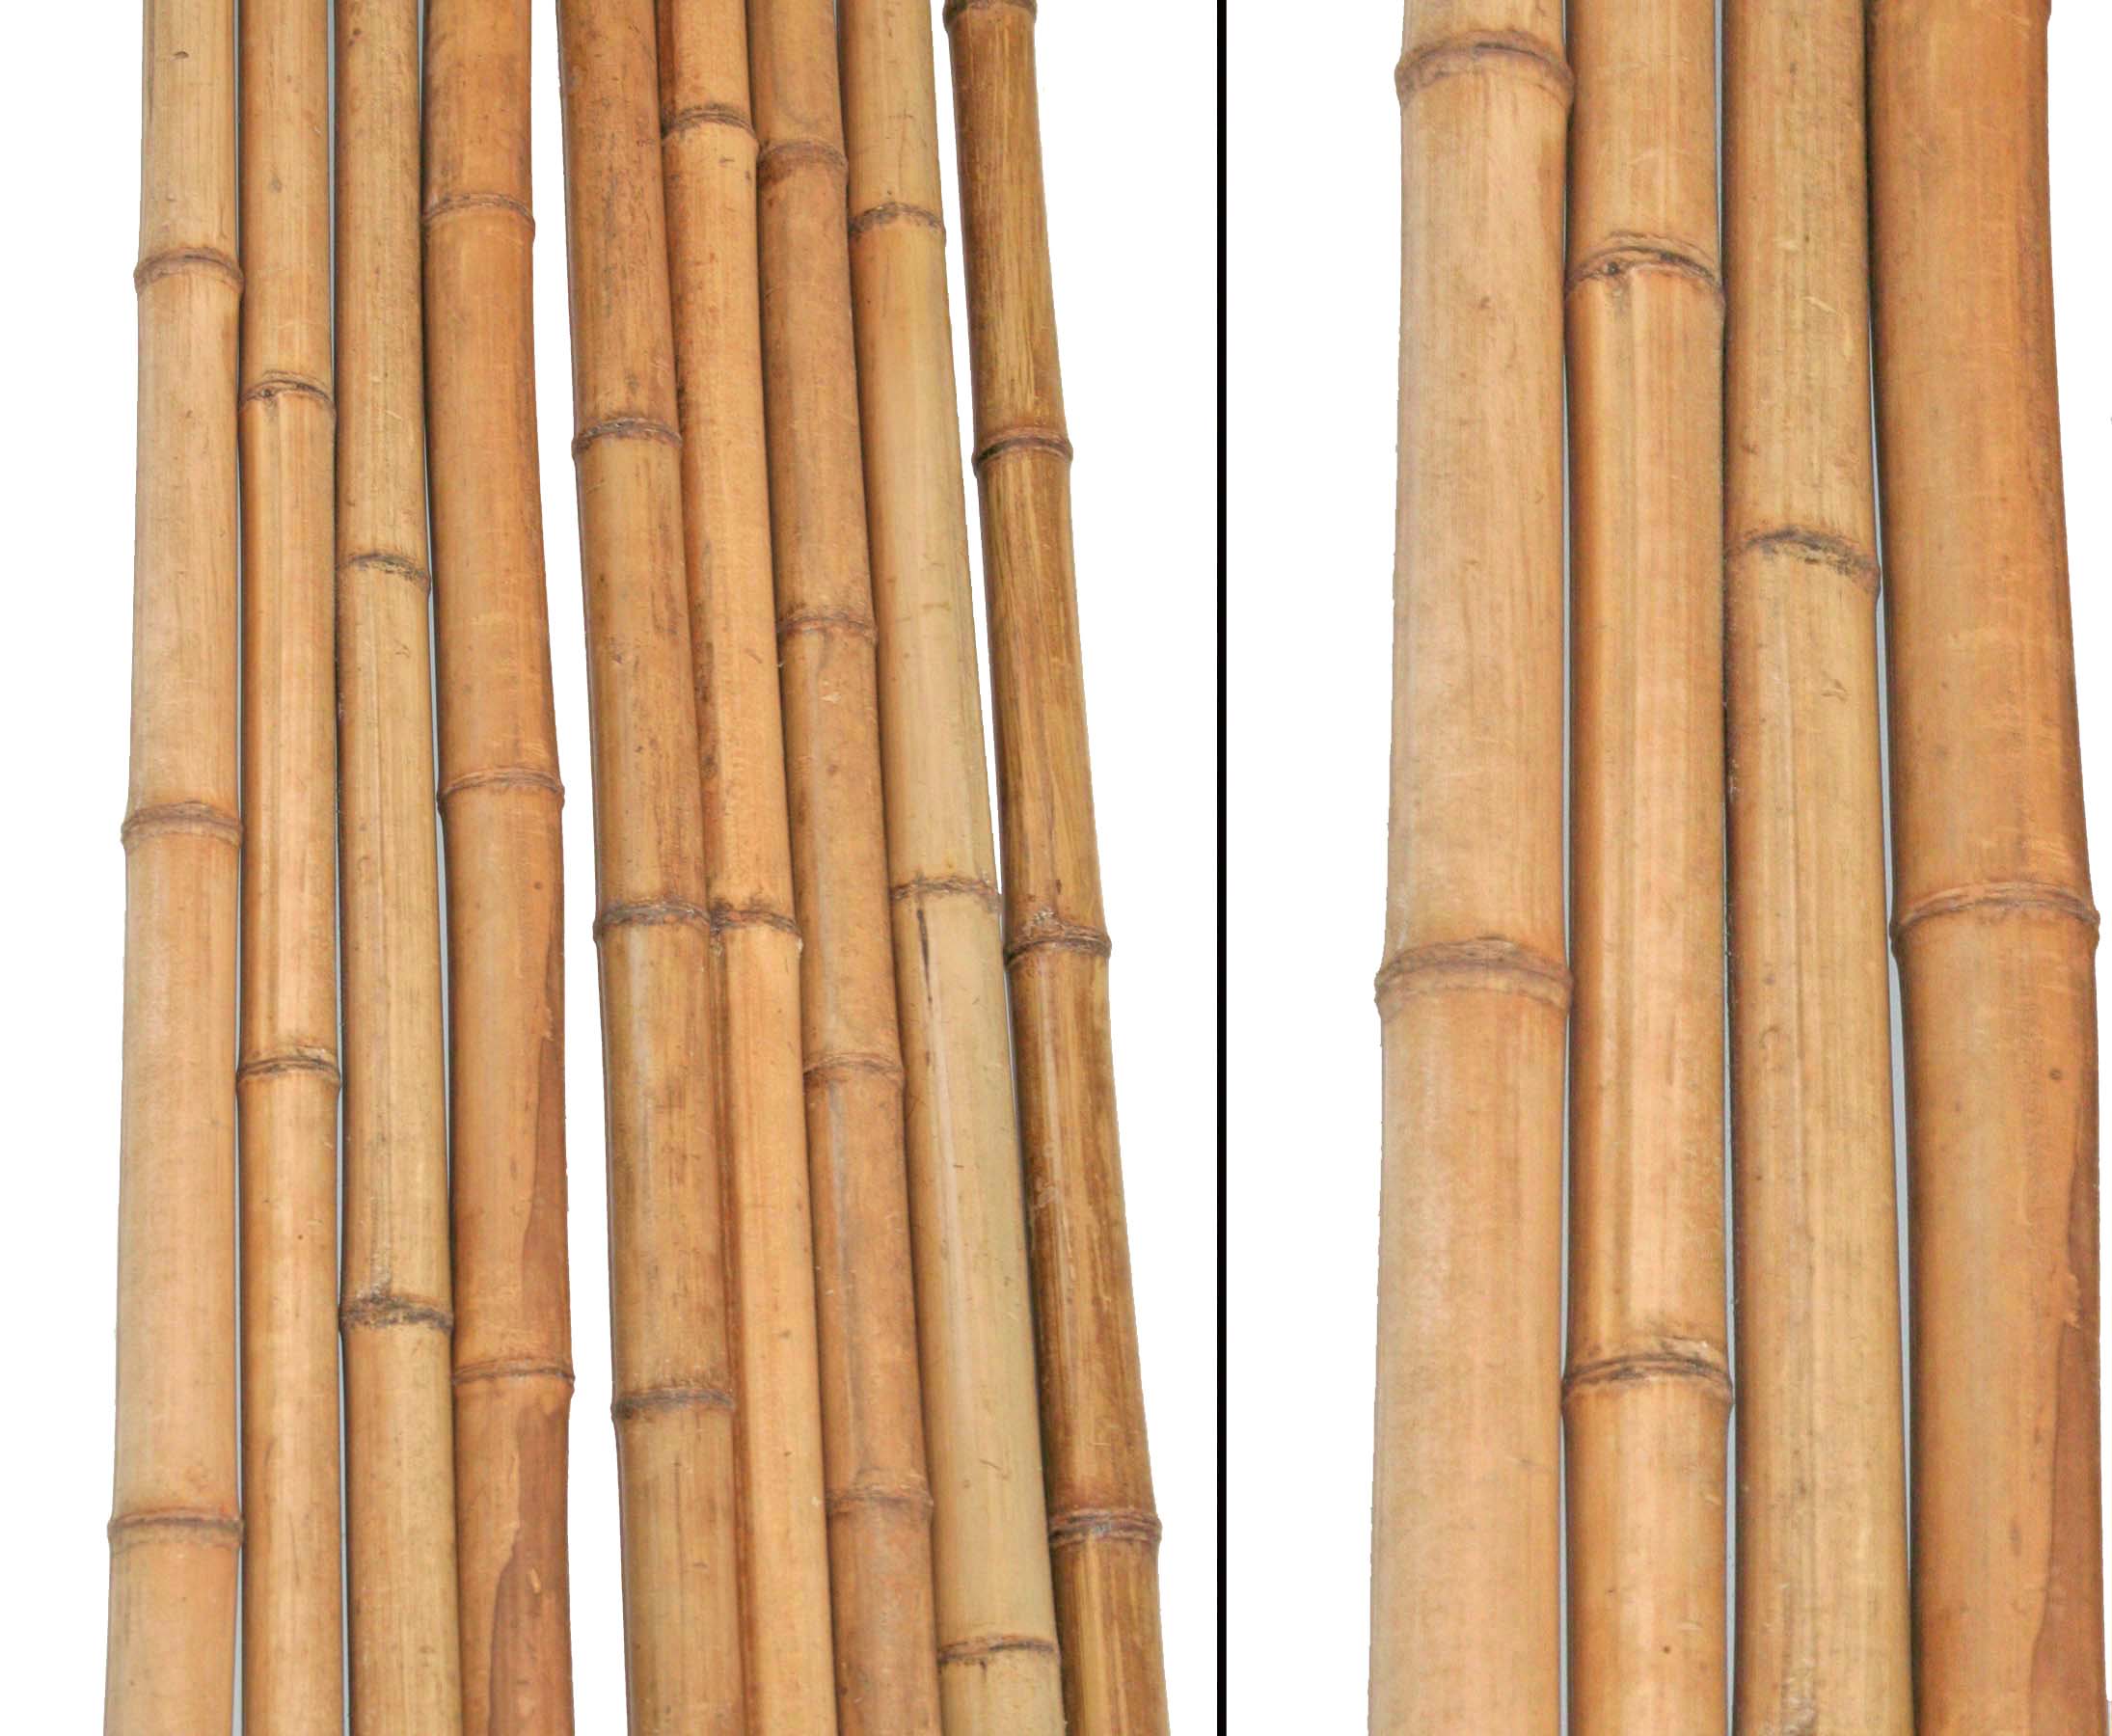 10 bis 12cm Bambus Rohr Bambus Latten farbige Bambusrohre Bamboo Bambus Halbschale Bambusstangen --> großes Sortiment an Bambusrohre und Rohre aus Bambus Bambus-Rohre Moso unbehandelt getrocknet und hitzebehandelt Bambus natur gelbbraun 150cm Durch